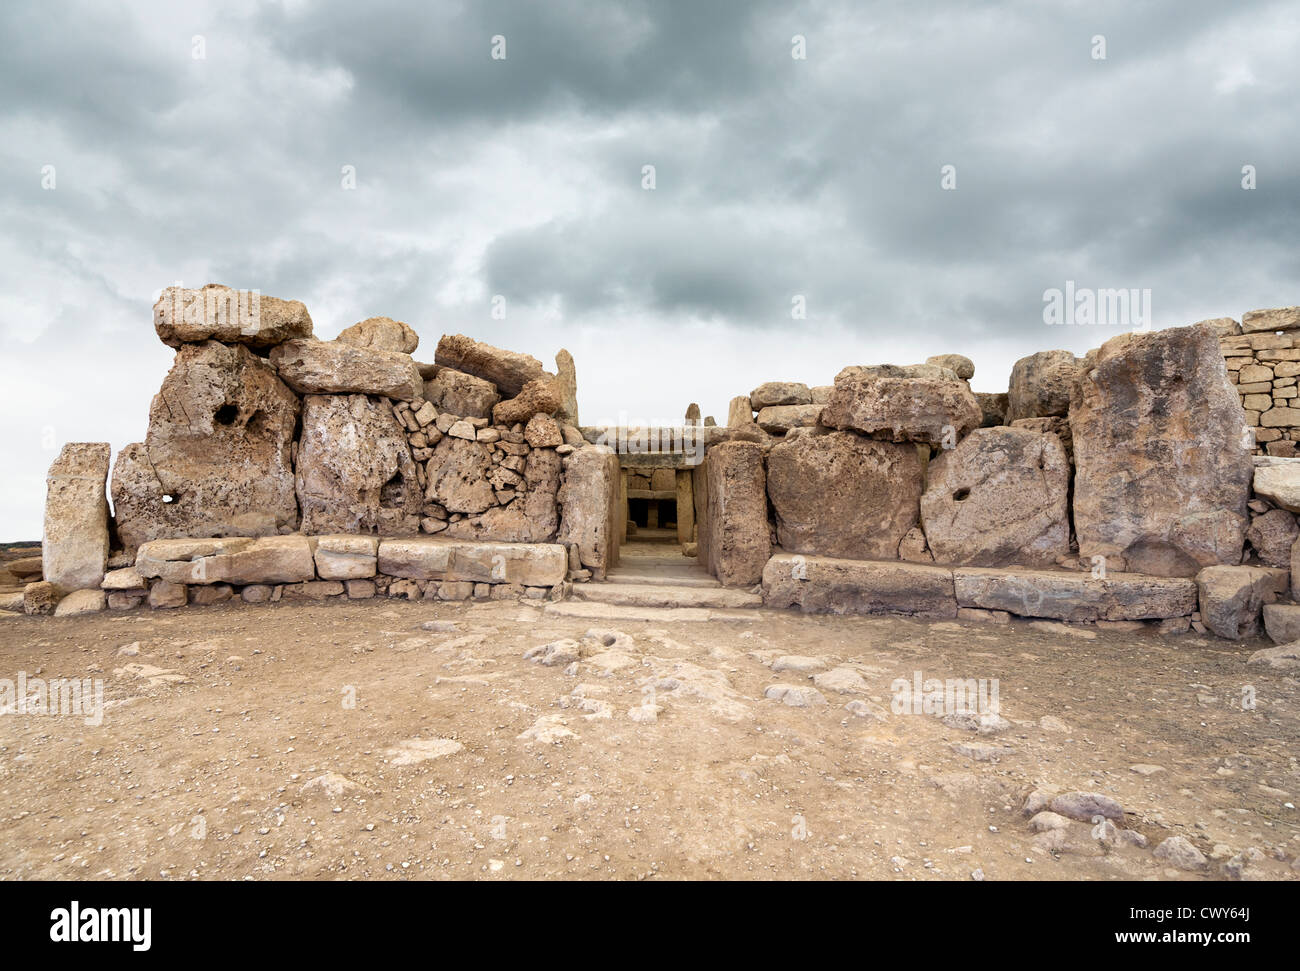 Entrata ai templi di Mnajdra vicino a Hagar Qim, Qrendi, isola di Malta Foto Stock